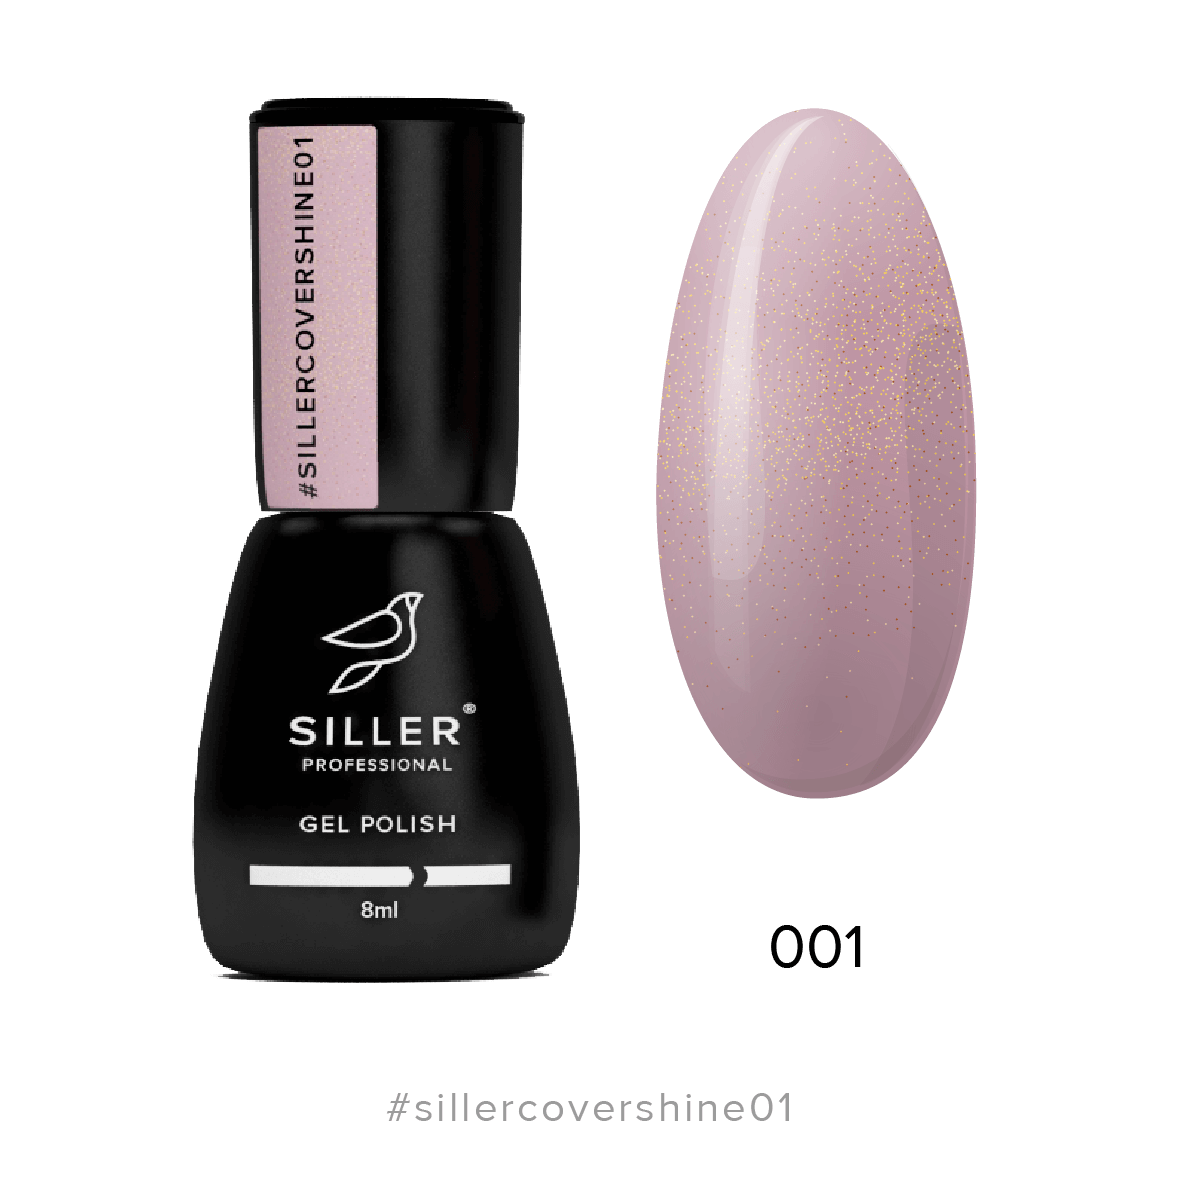 Siller Cover Base Shine #1 - Beige-Pink